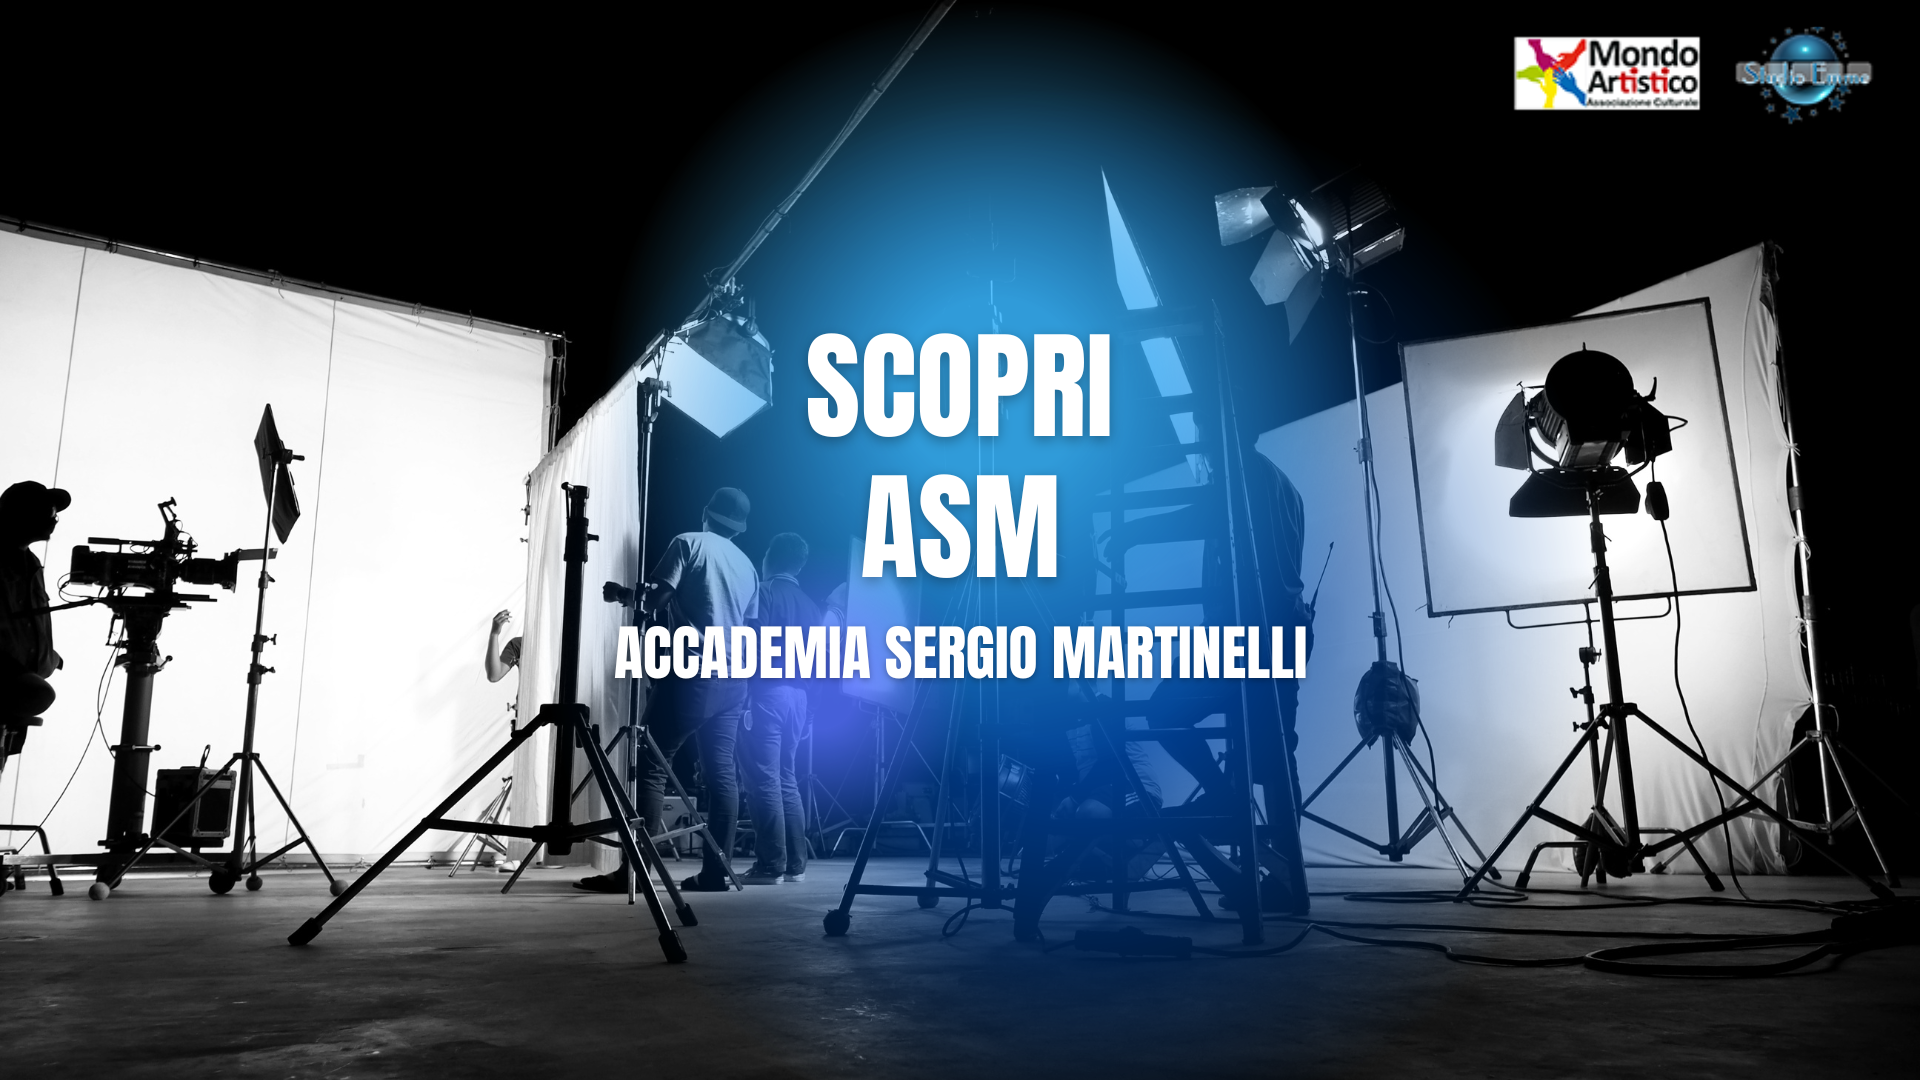 ASM | ACCADEMIA SERGIO MARTINELLI: UNA NUOVA CHANCE!